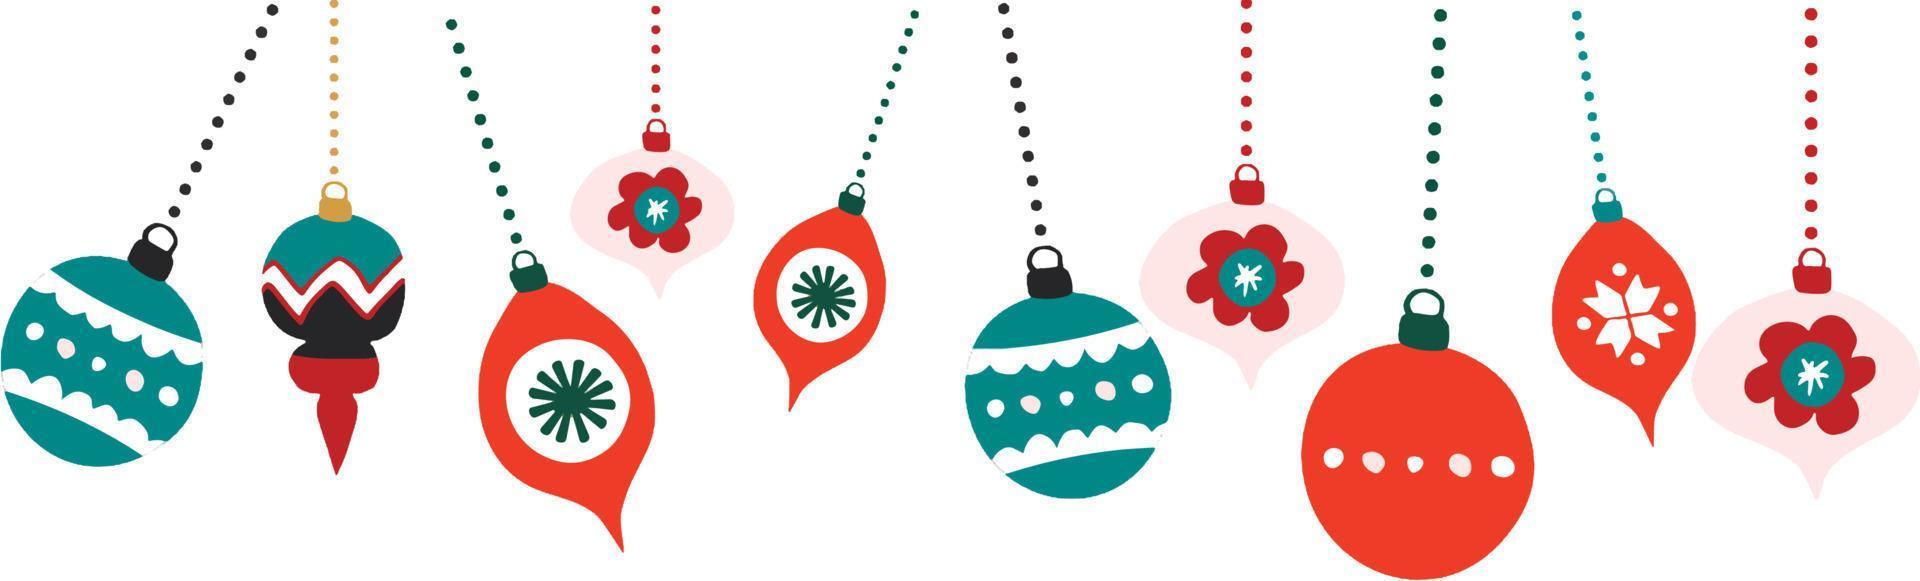 bola de navidad, patrón de vacaciones, ilustración de año nuevo. vector